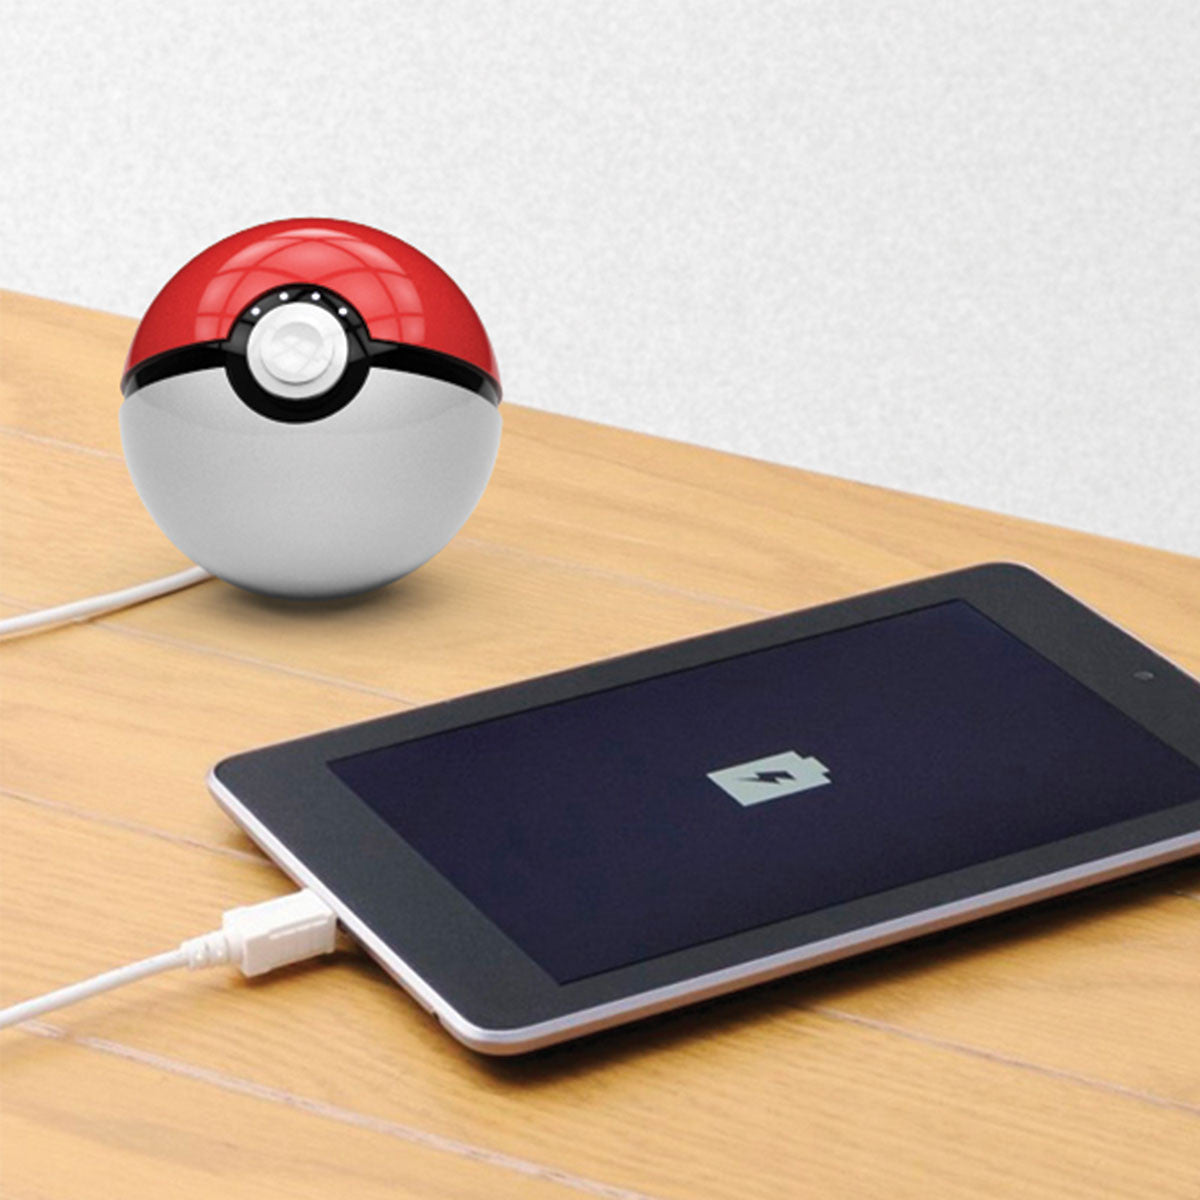 Pokeball Pokemon Go Power Bank USB Charger 12000mAh   